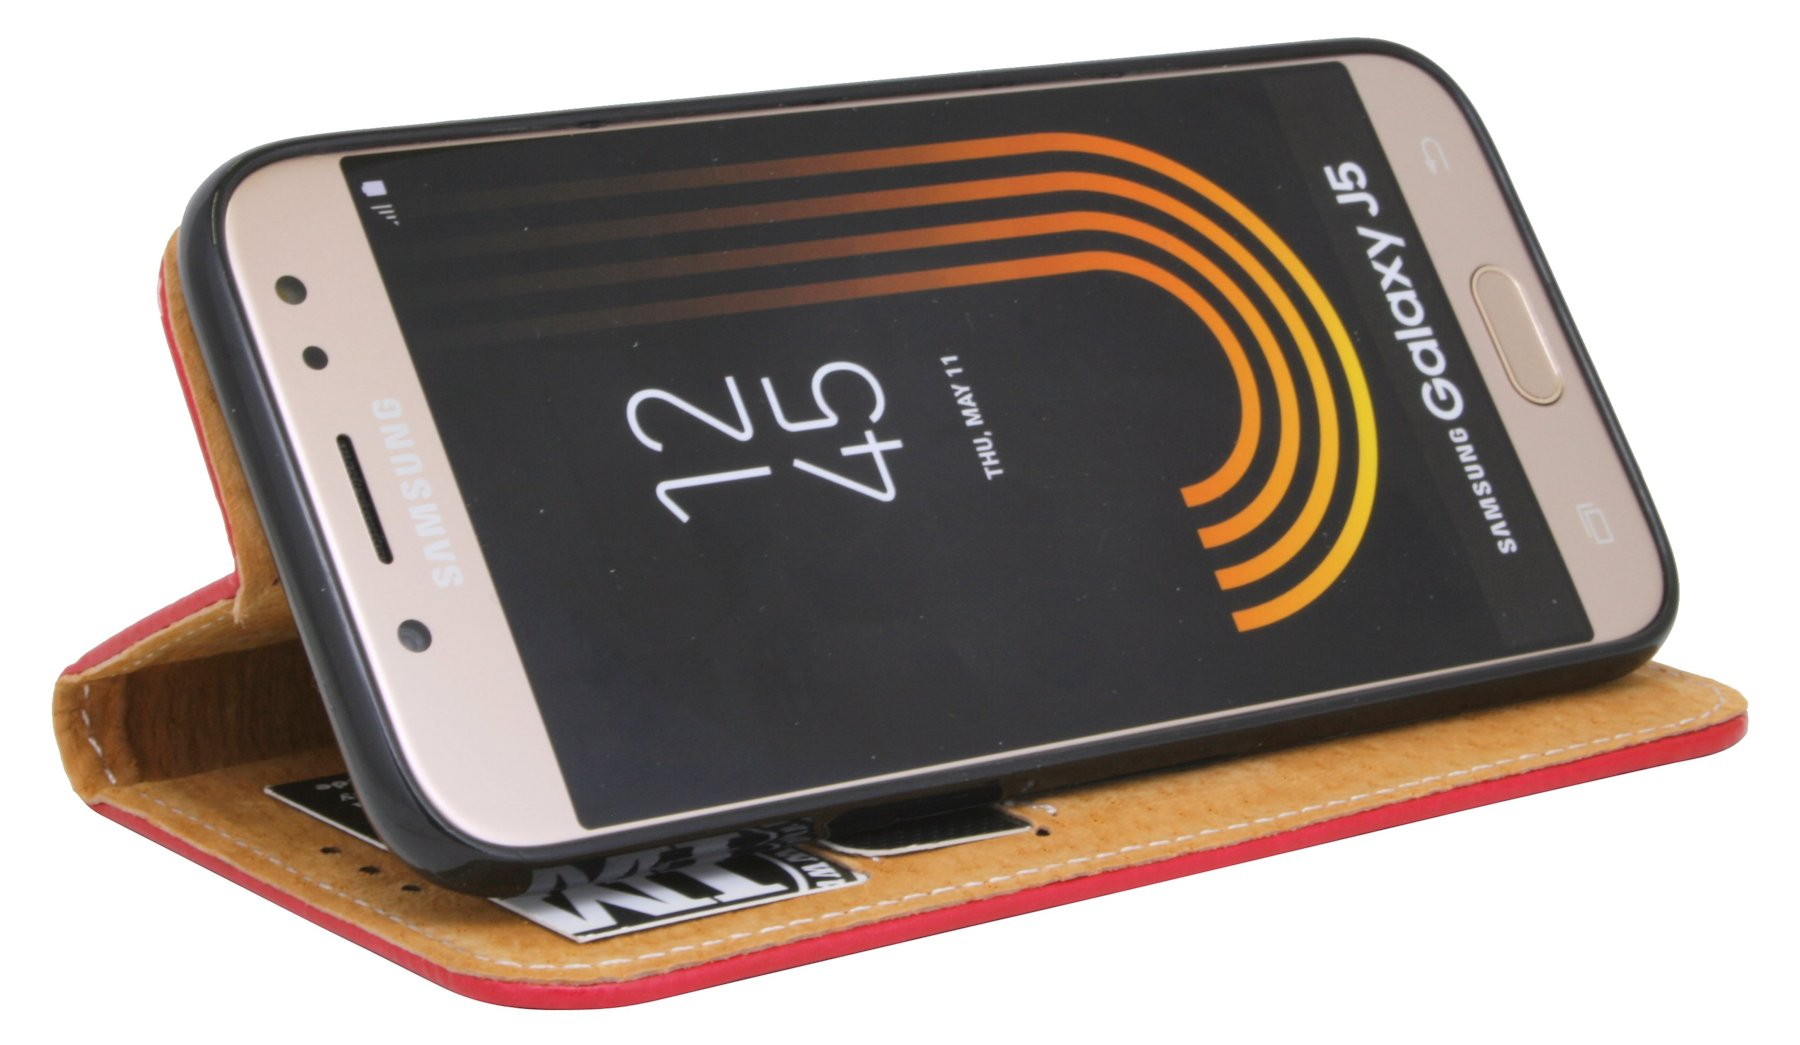 COFI Rot Case, Bookcover, Samsung, Leder Echt A6+, Galaxy